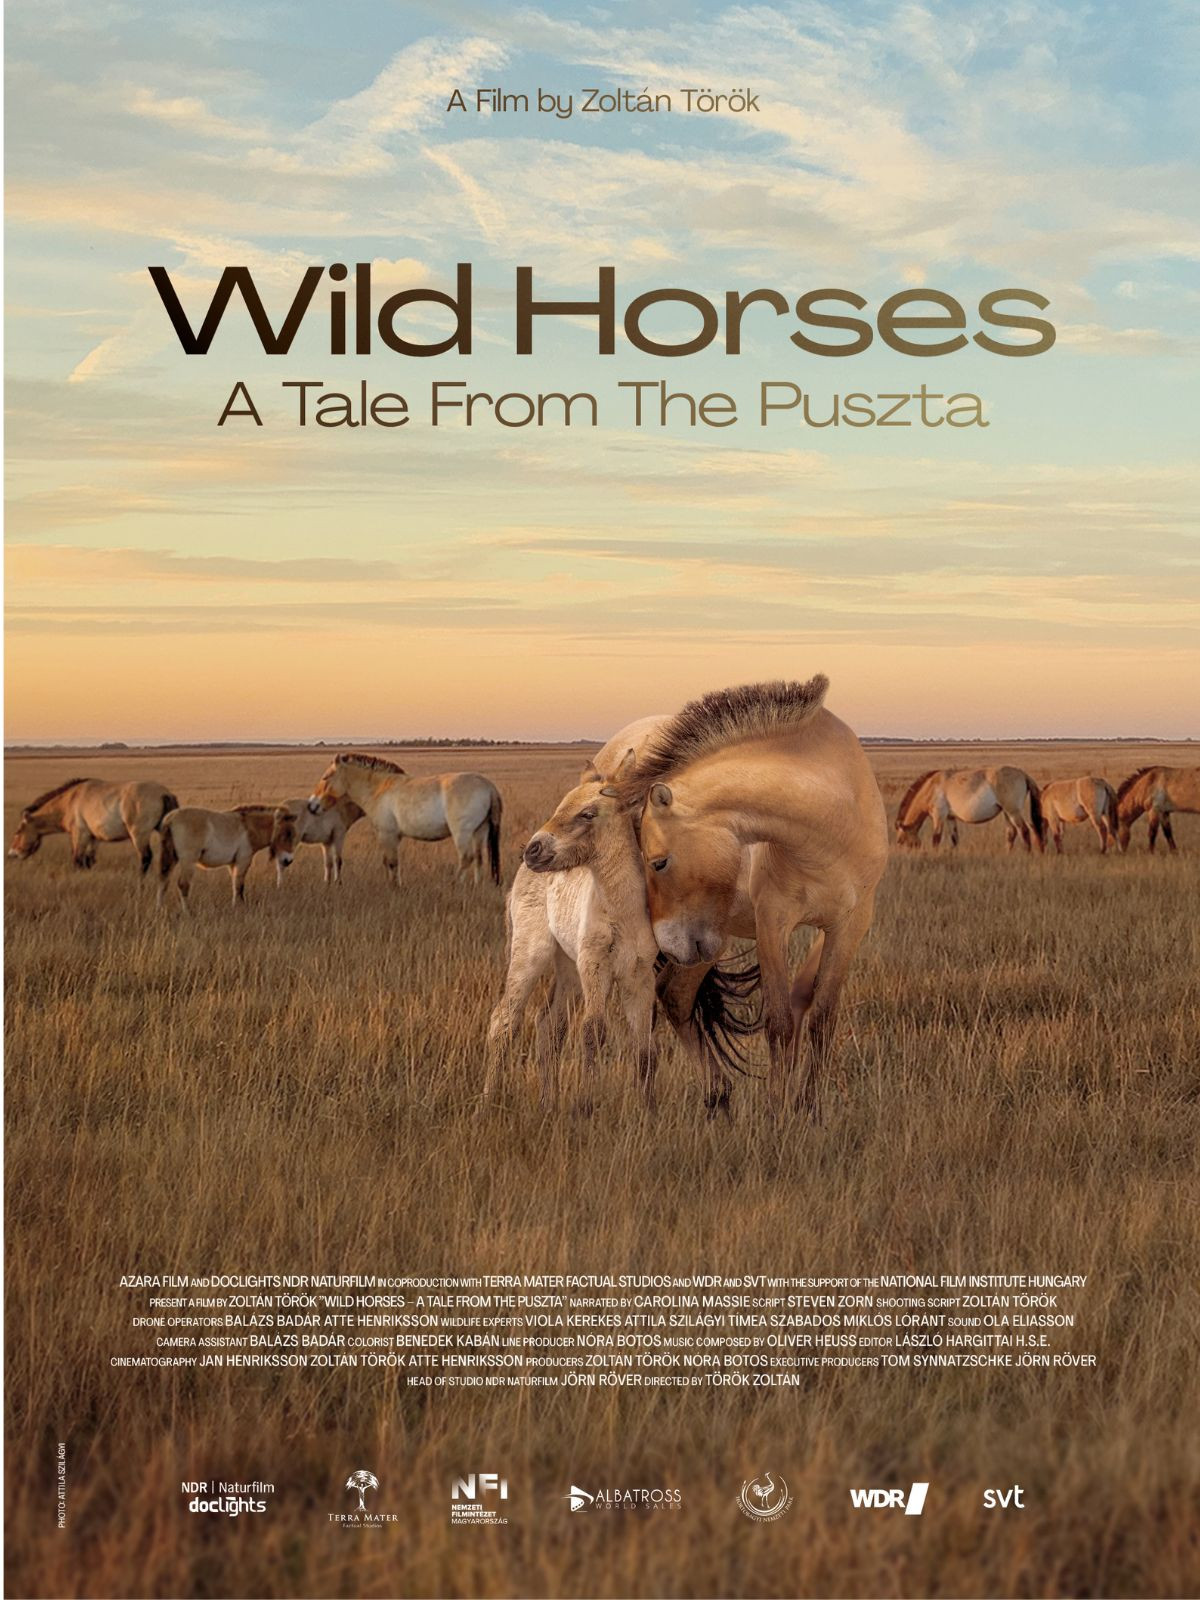 NFI - University Film Club: Zoltán Török: Wild Horses - A Tale from the Puszta